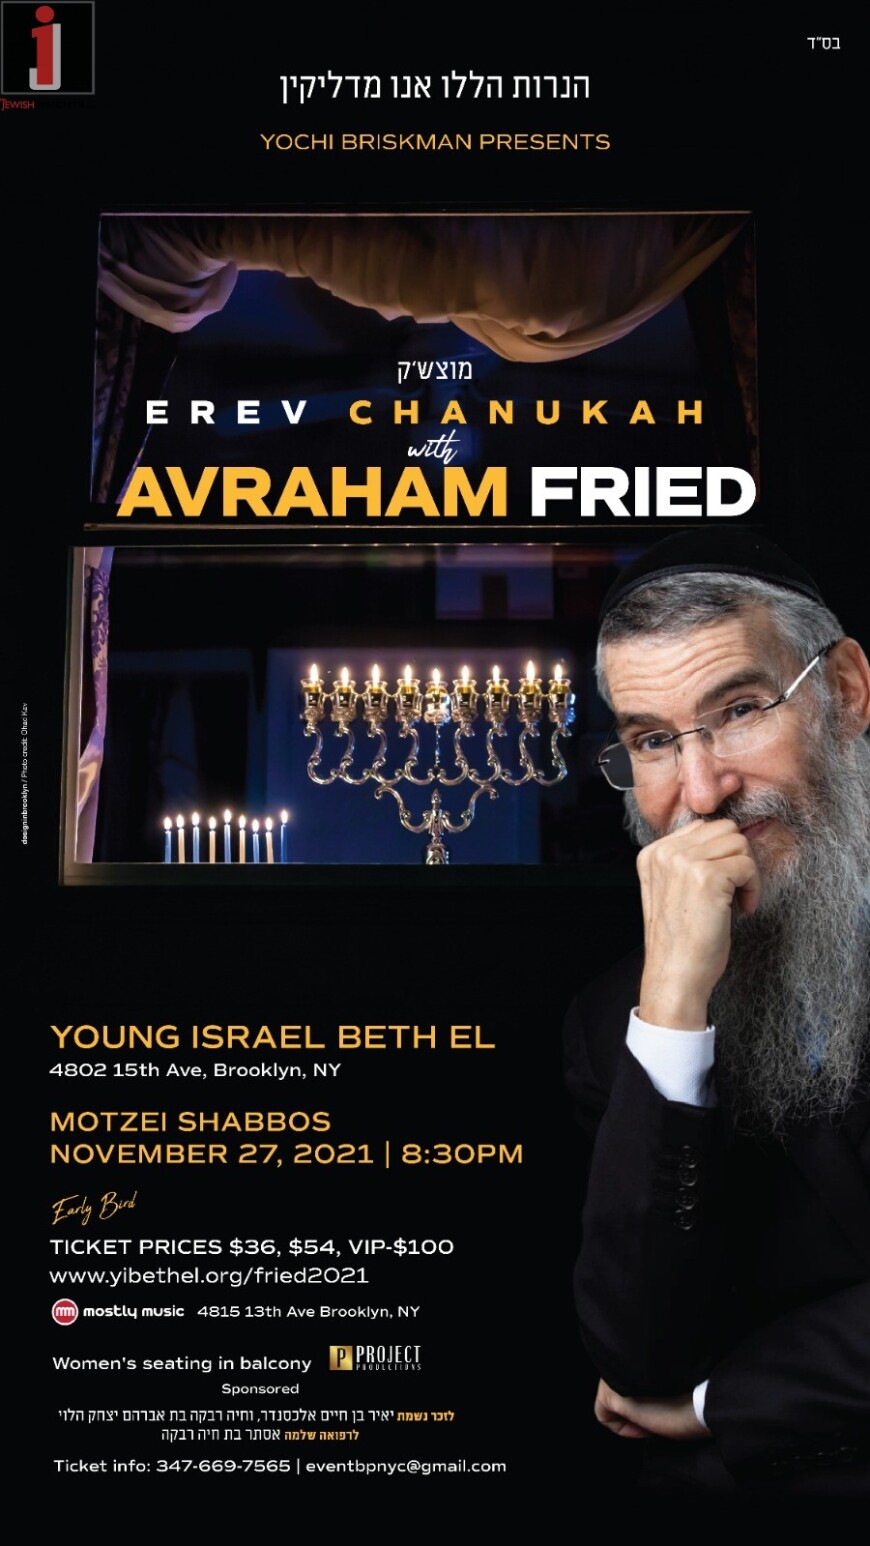 Yochi Briskman Presents: EREV CHANUKAH with AVRAHAM FRIED